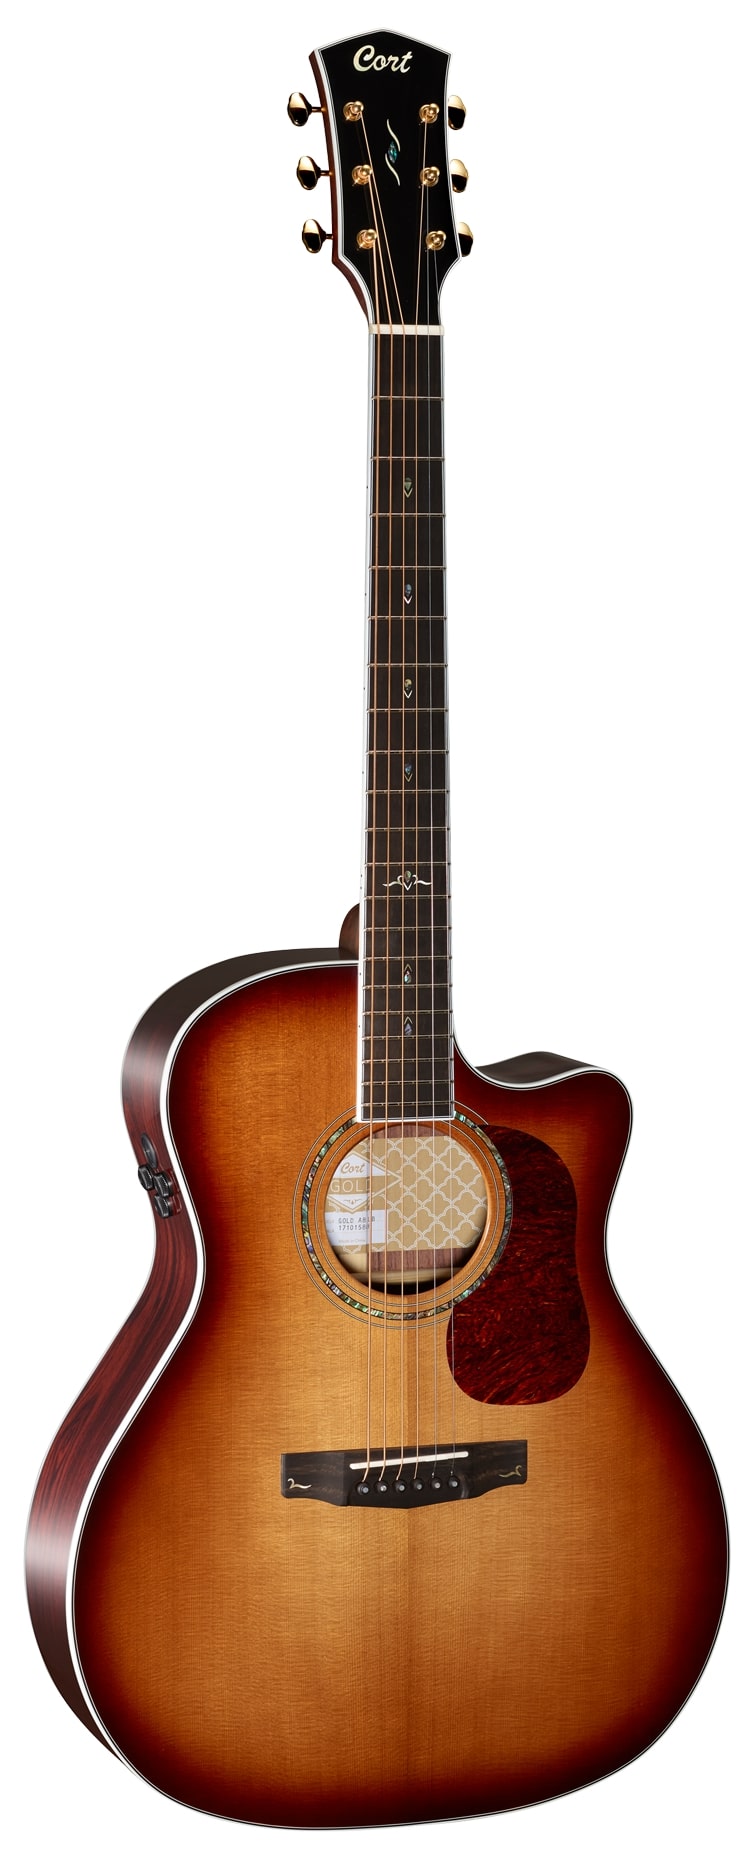 Электроакустические гитары Cort Gold-A8-WCASE-LB (чехол в комплекте) бас гитары cort action pj wbag opw чехол в комплекте